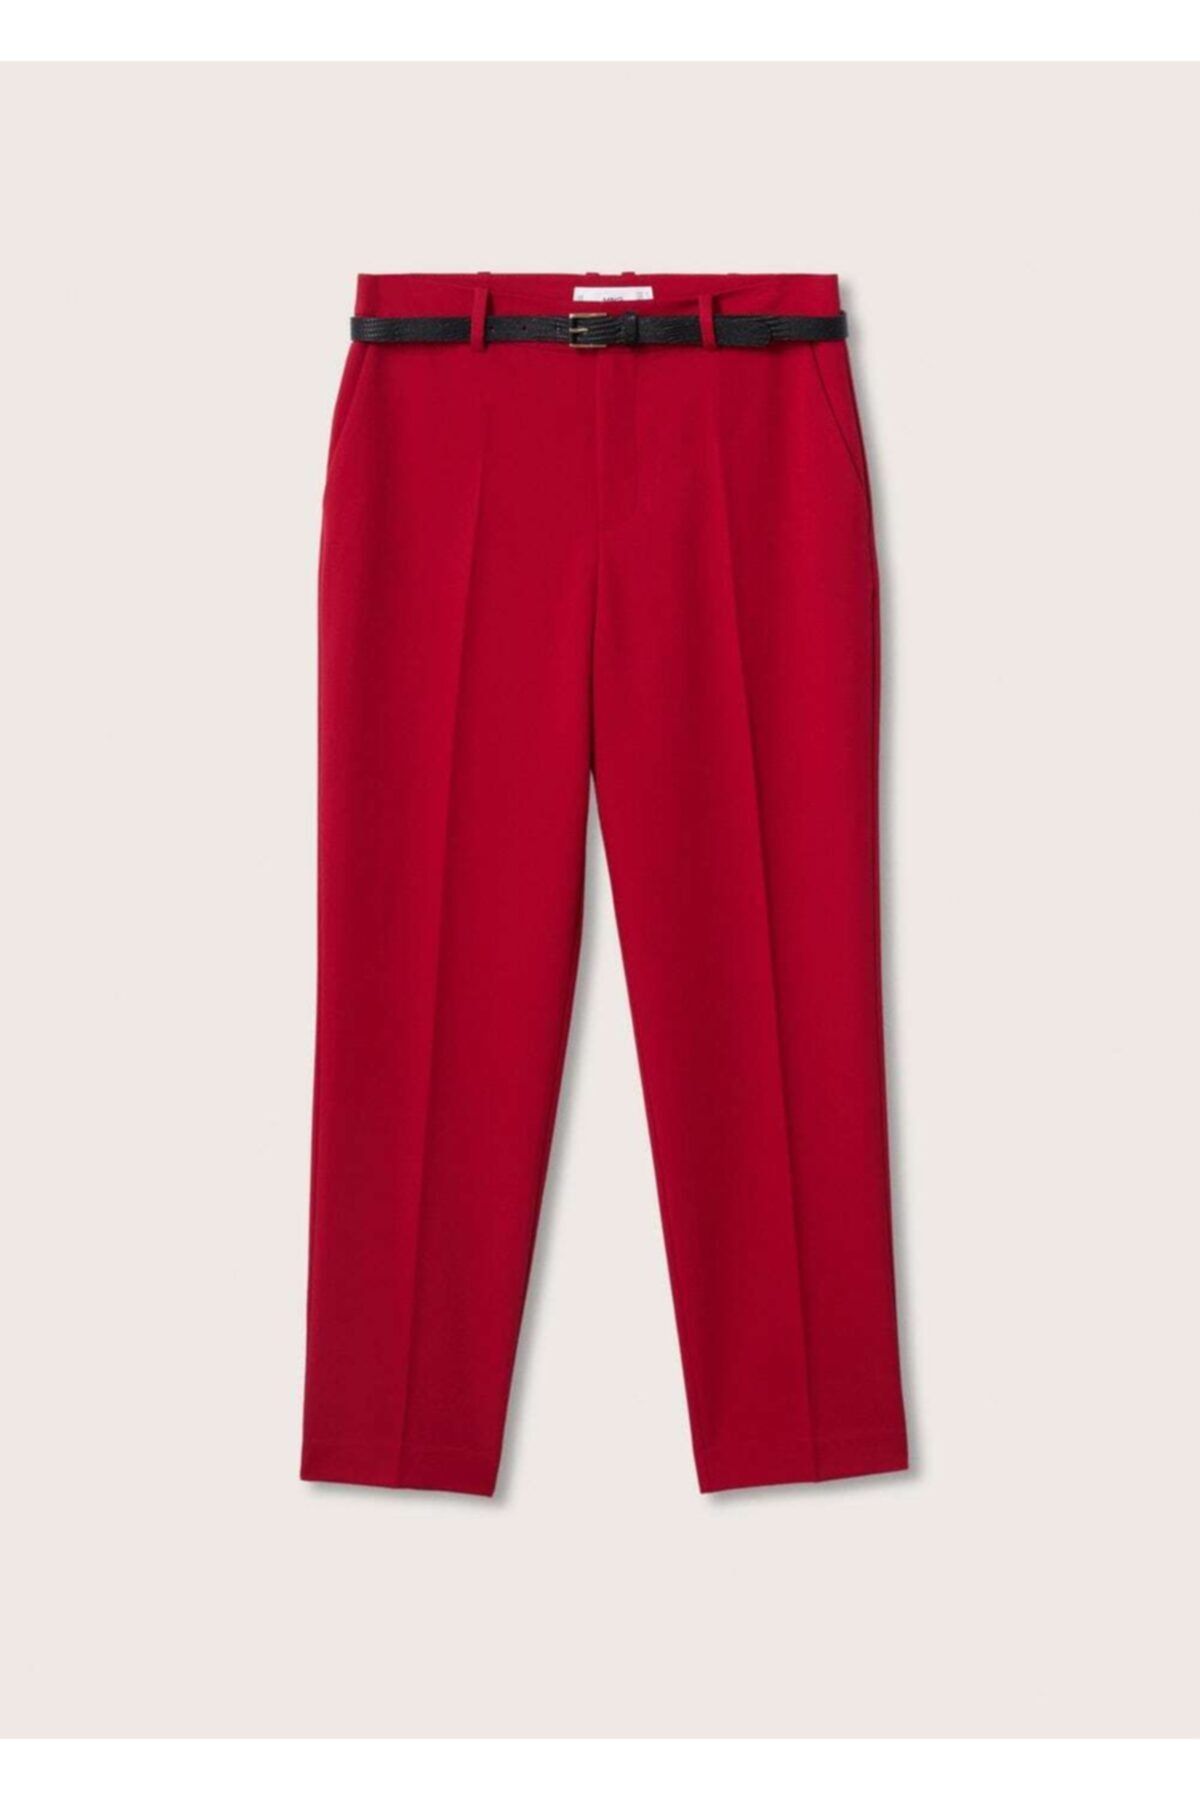 MANGO Kadın Kırmızı Kemerli Kumaş Pantolon